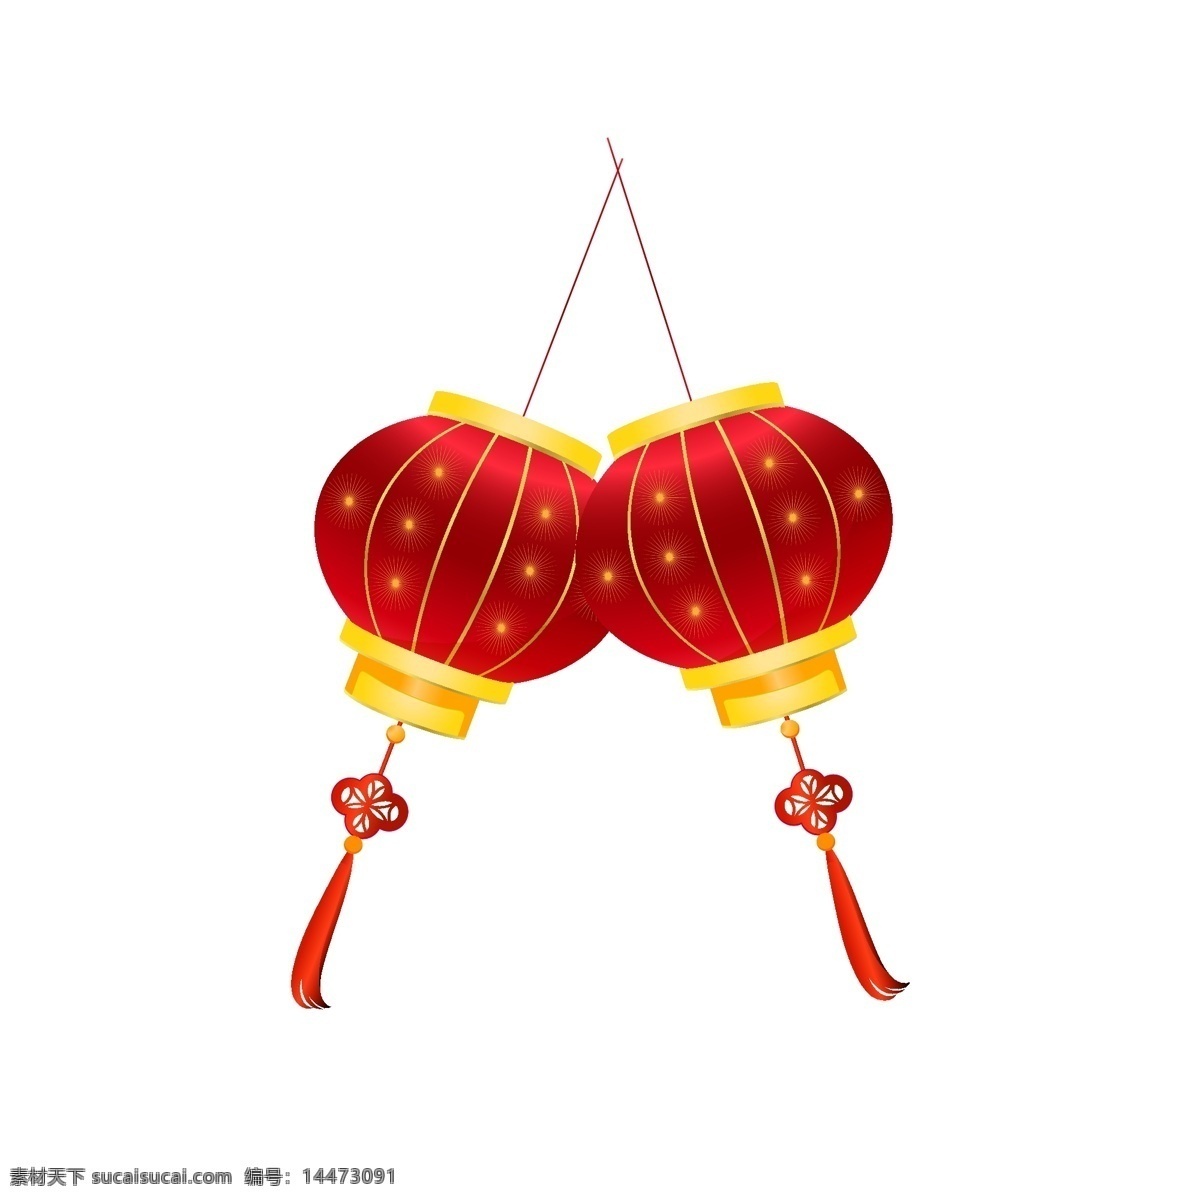 新年 红色 灯笼 插画 红色的灯笼 漂亮的灯笼 手绘灯笼 卡通灯笼 新年小物插画 红色的中国结